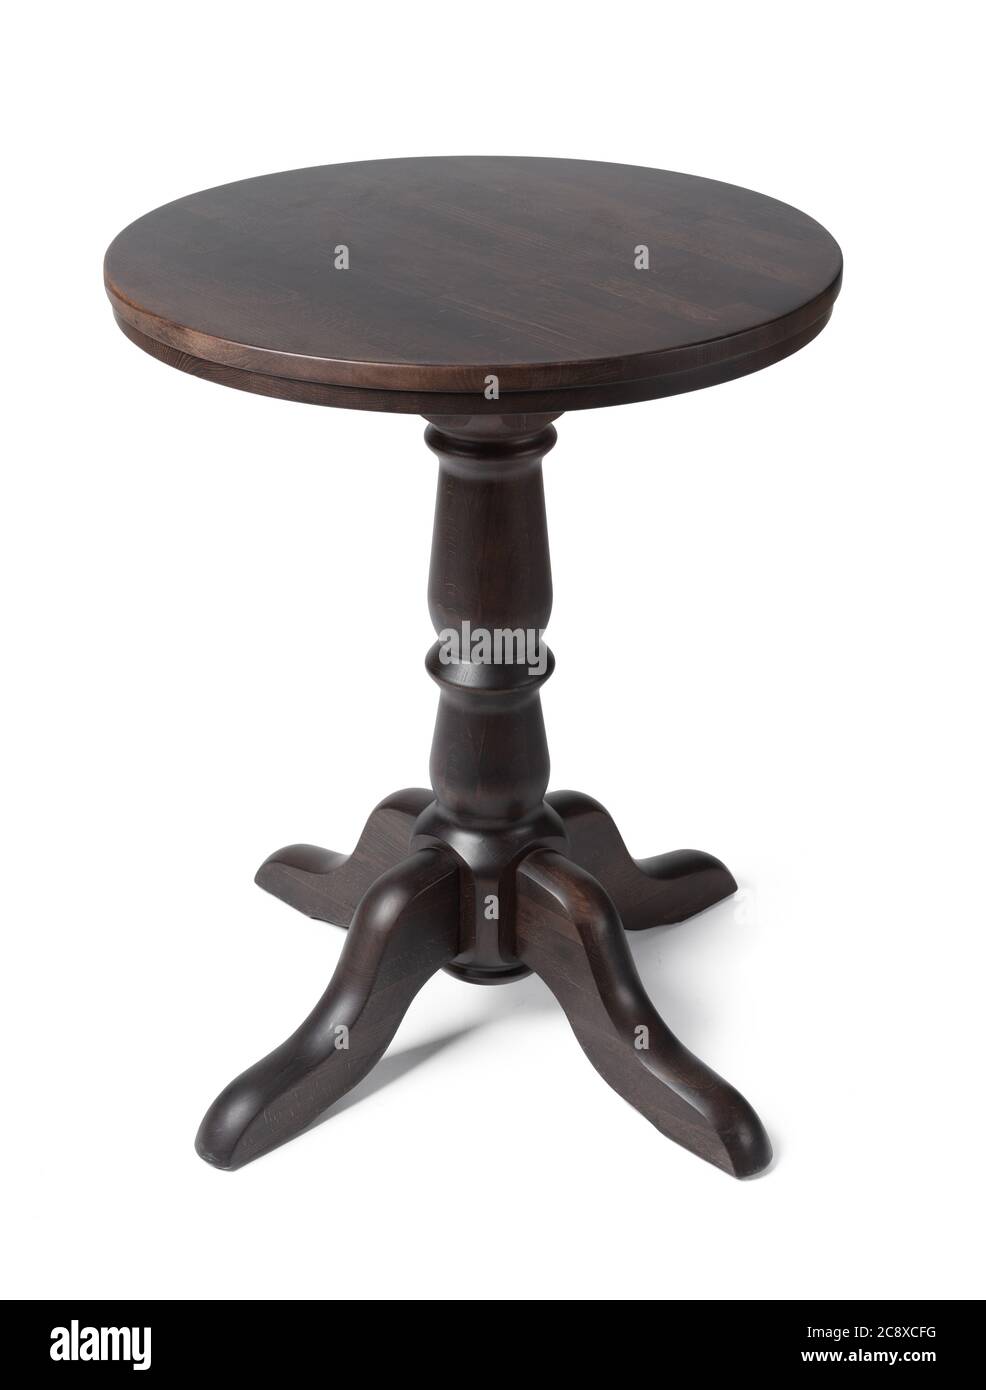 Table classique ovale en bois isolée sur blanc Banque D'Images